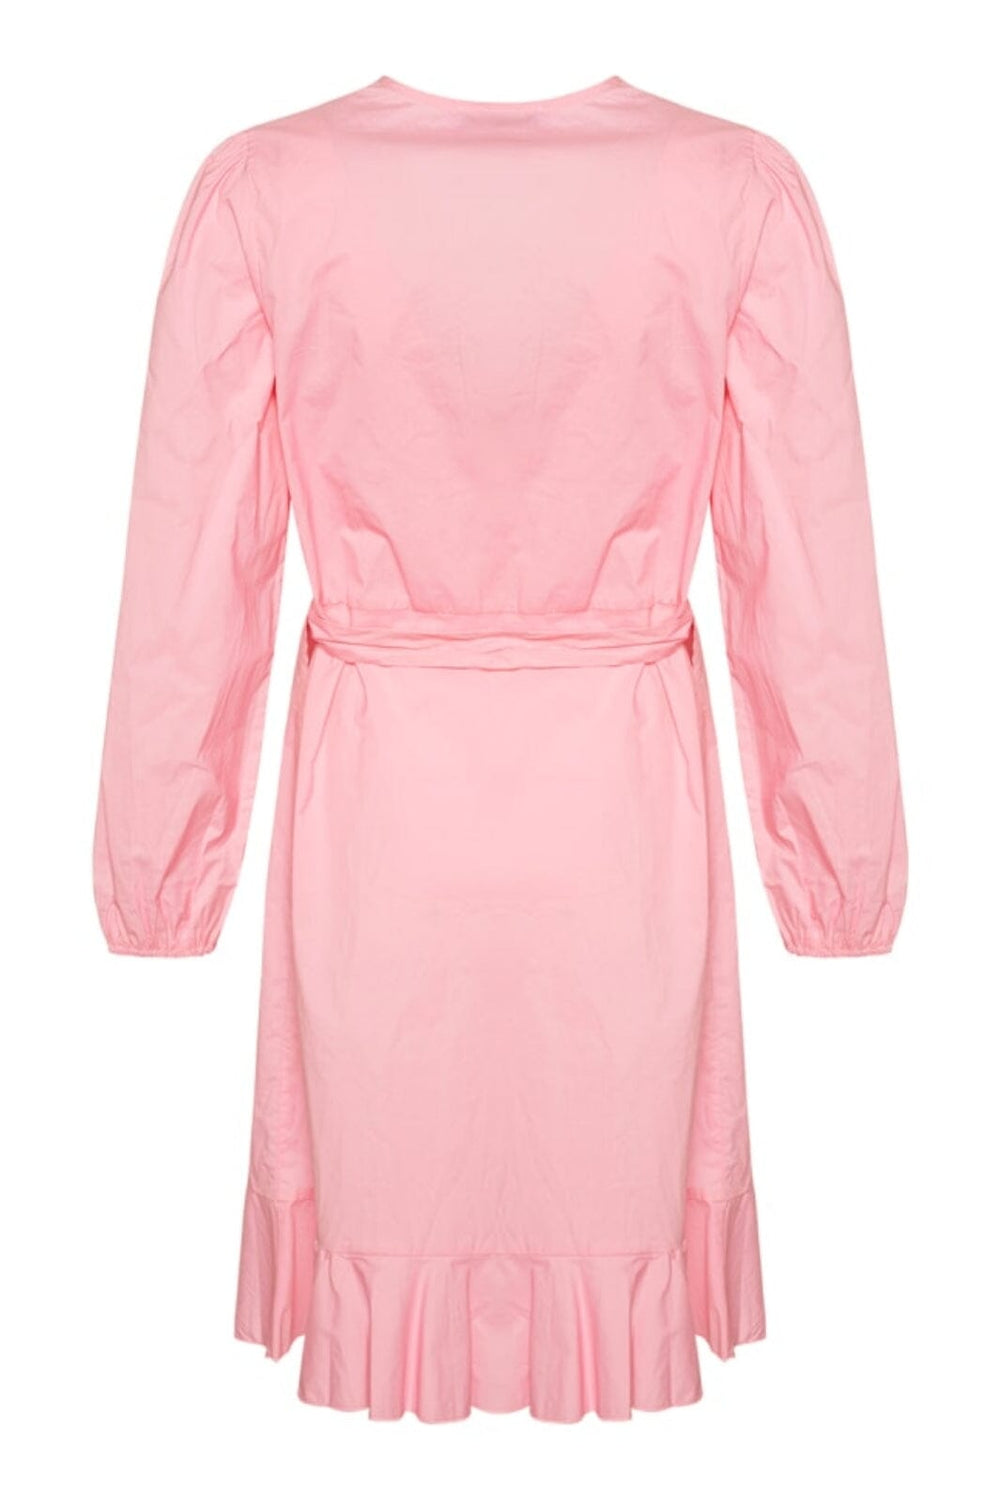 Noella - Magne Dress - Light Pink Kjoler 